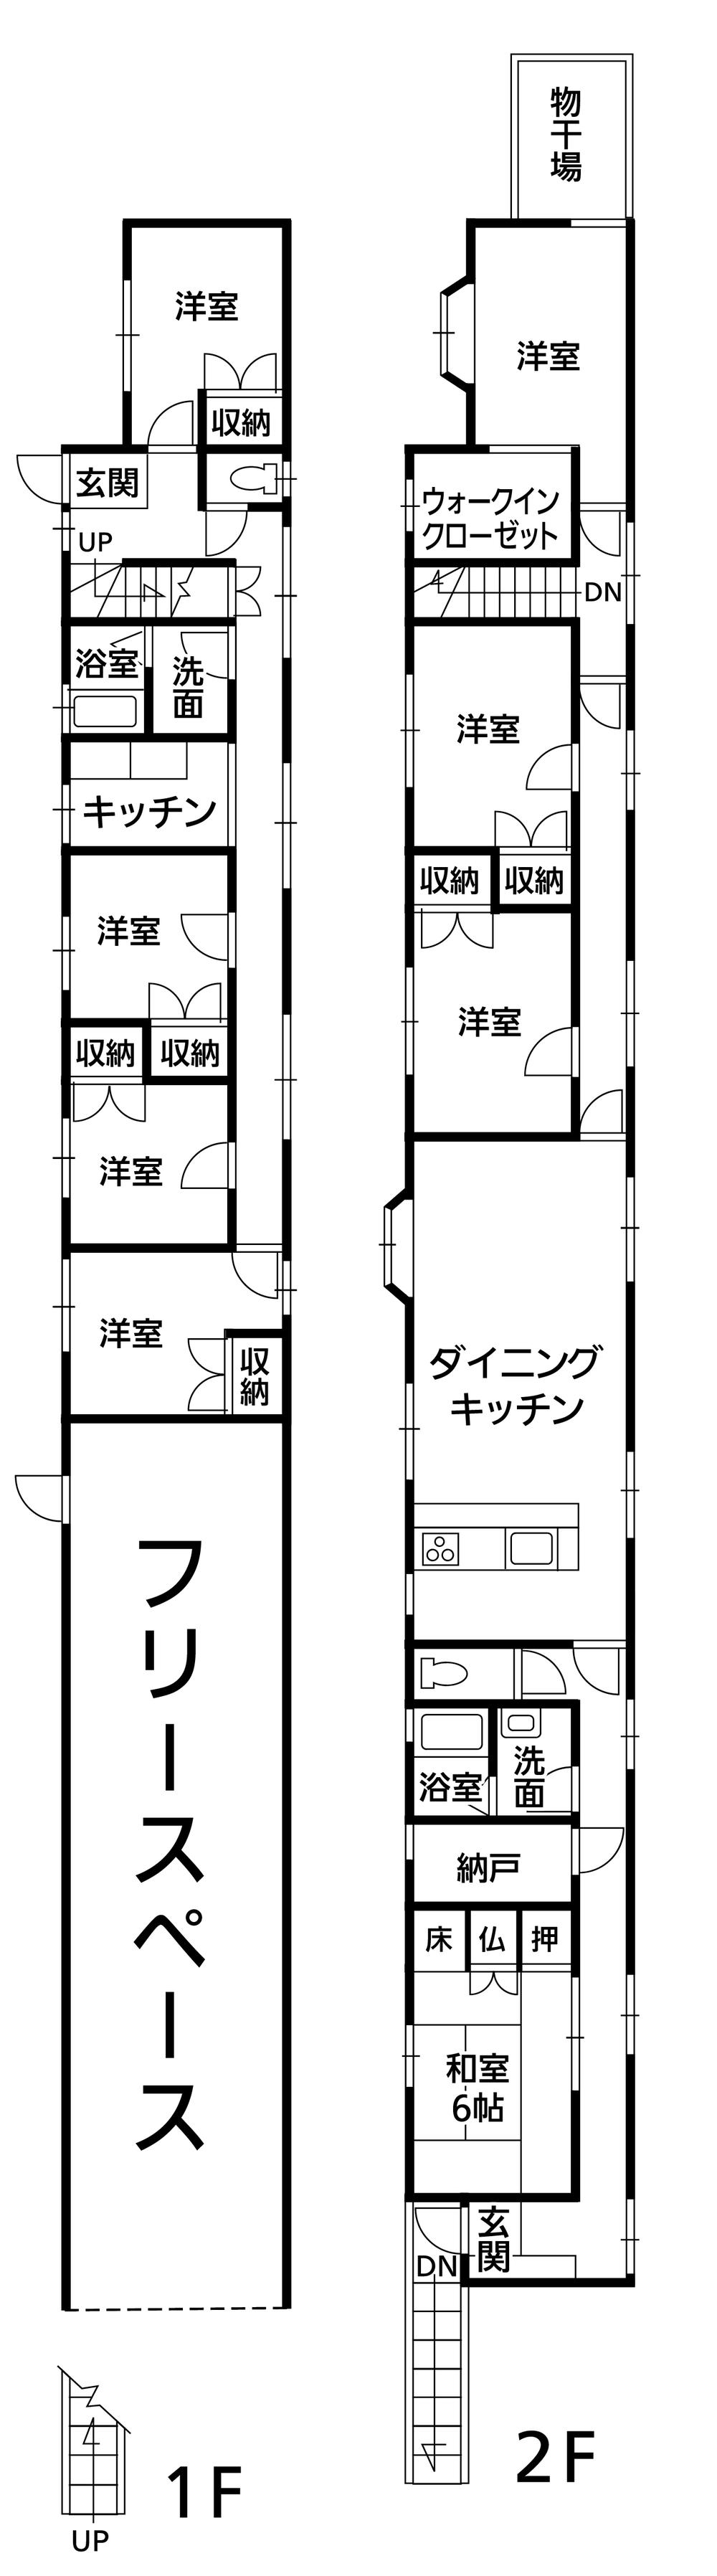 Floor plan. 23,810,000 yen, 8LDK + S (storeroom), Land area 243.88 sq m , Building area 218.5 sq m